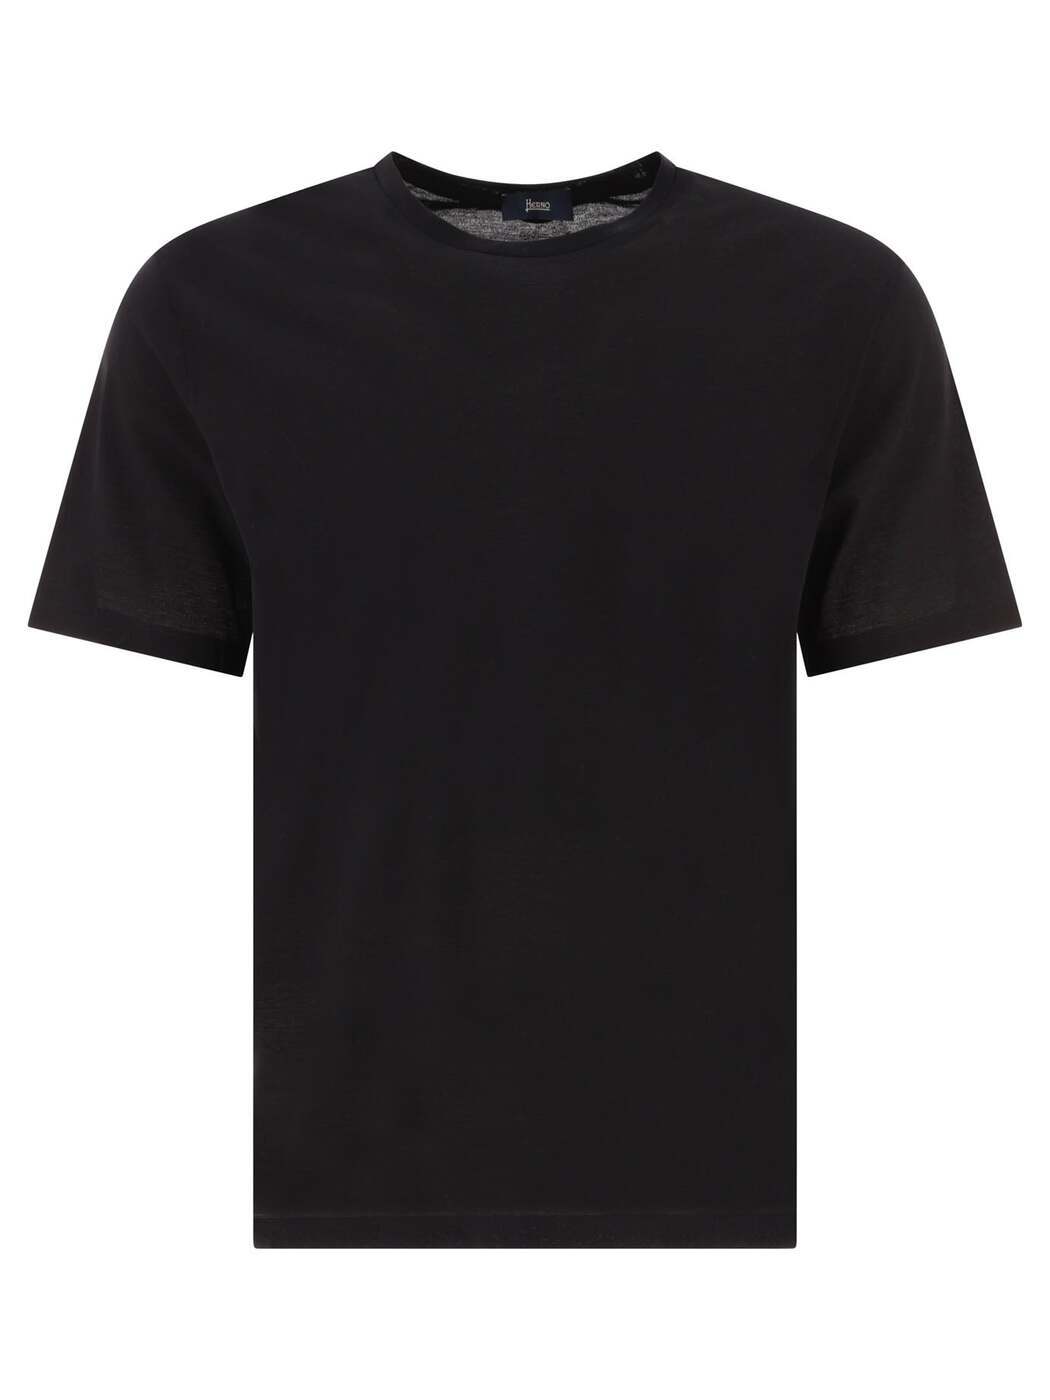 HERNO ヘルノ ブラック Black Tシャツ メンズ 8389272666261 【関税・送料無料】【ラッピング無料】 ba